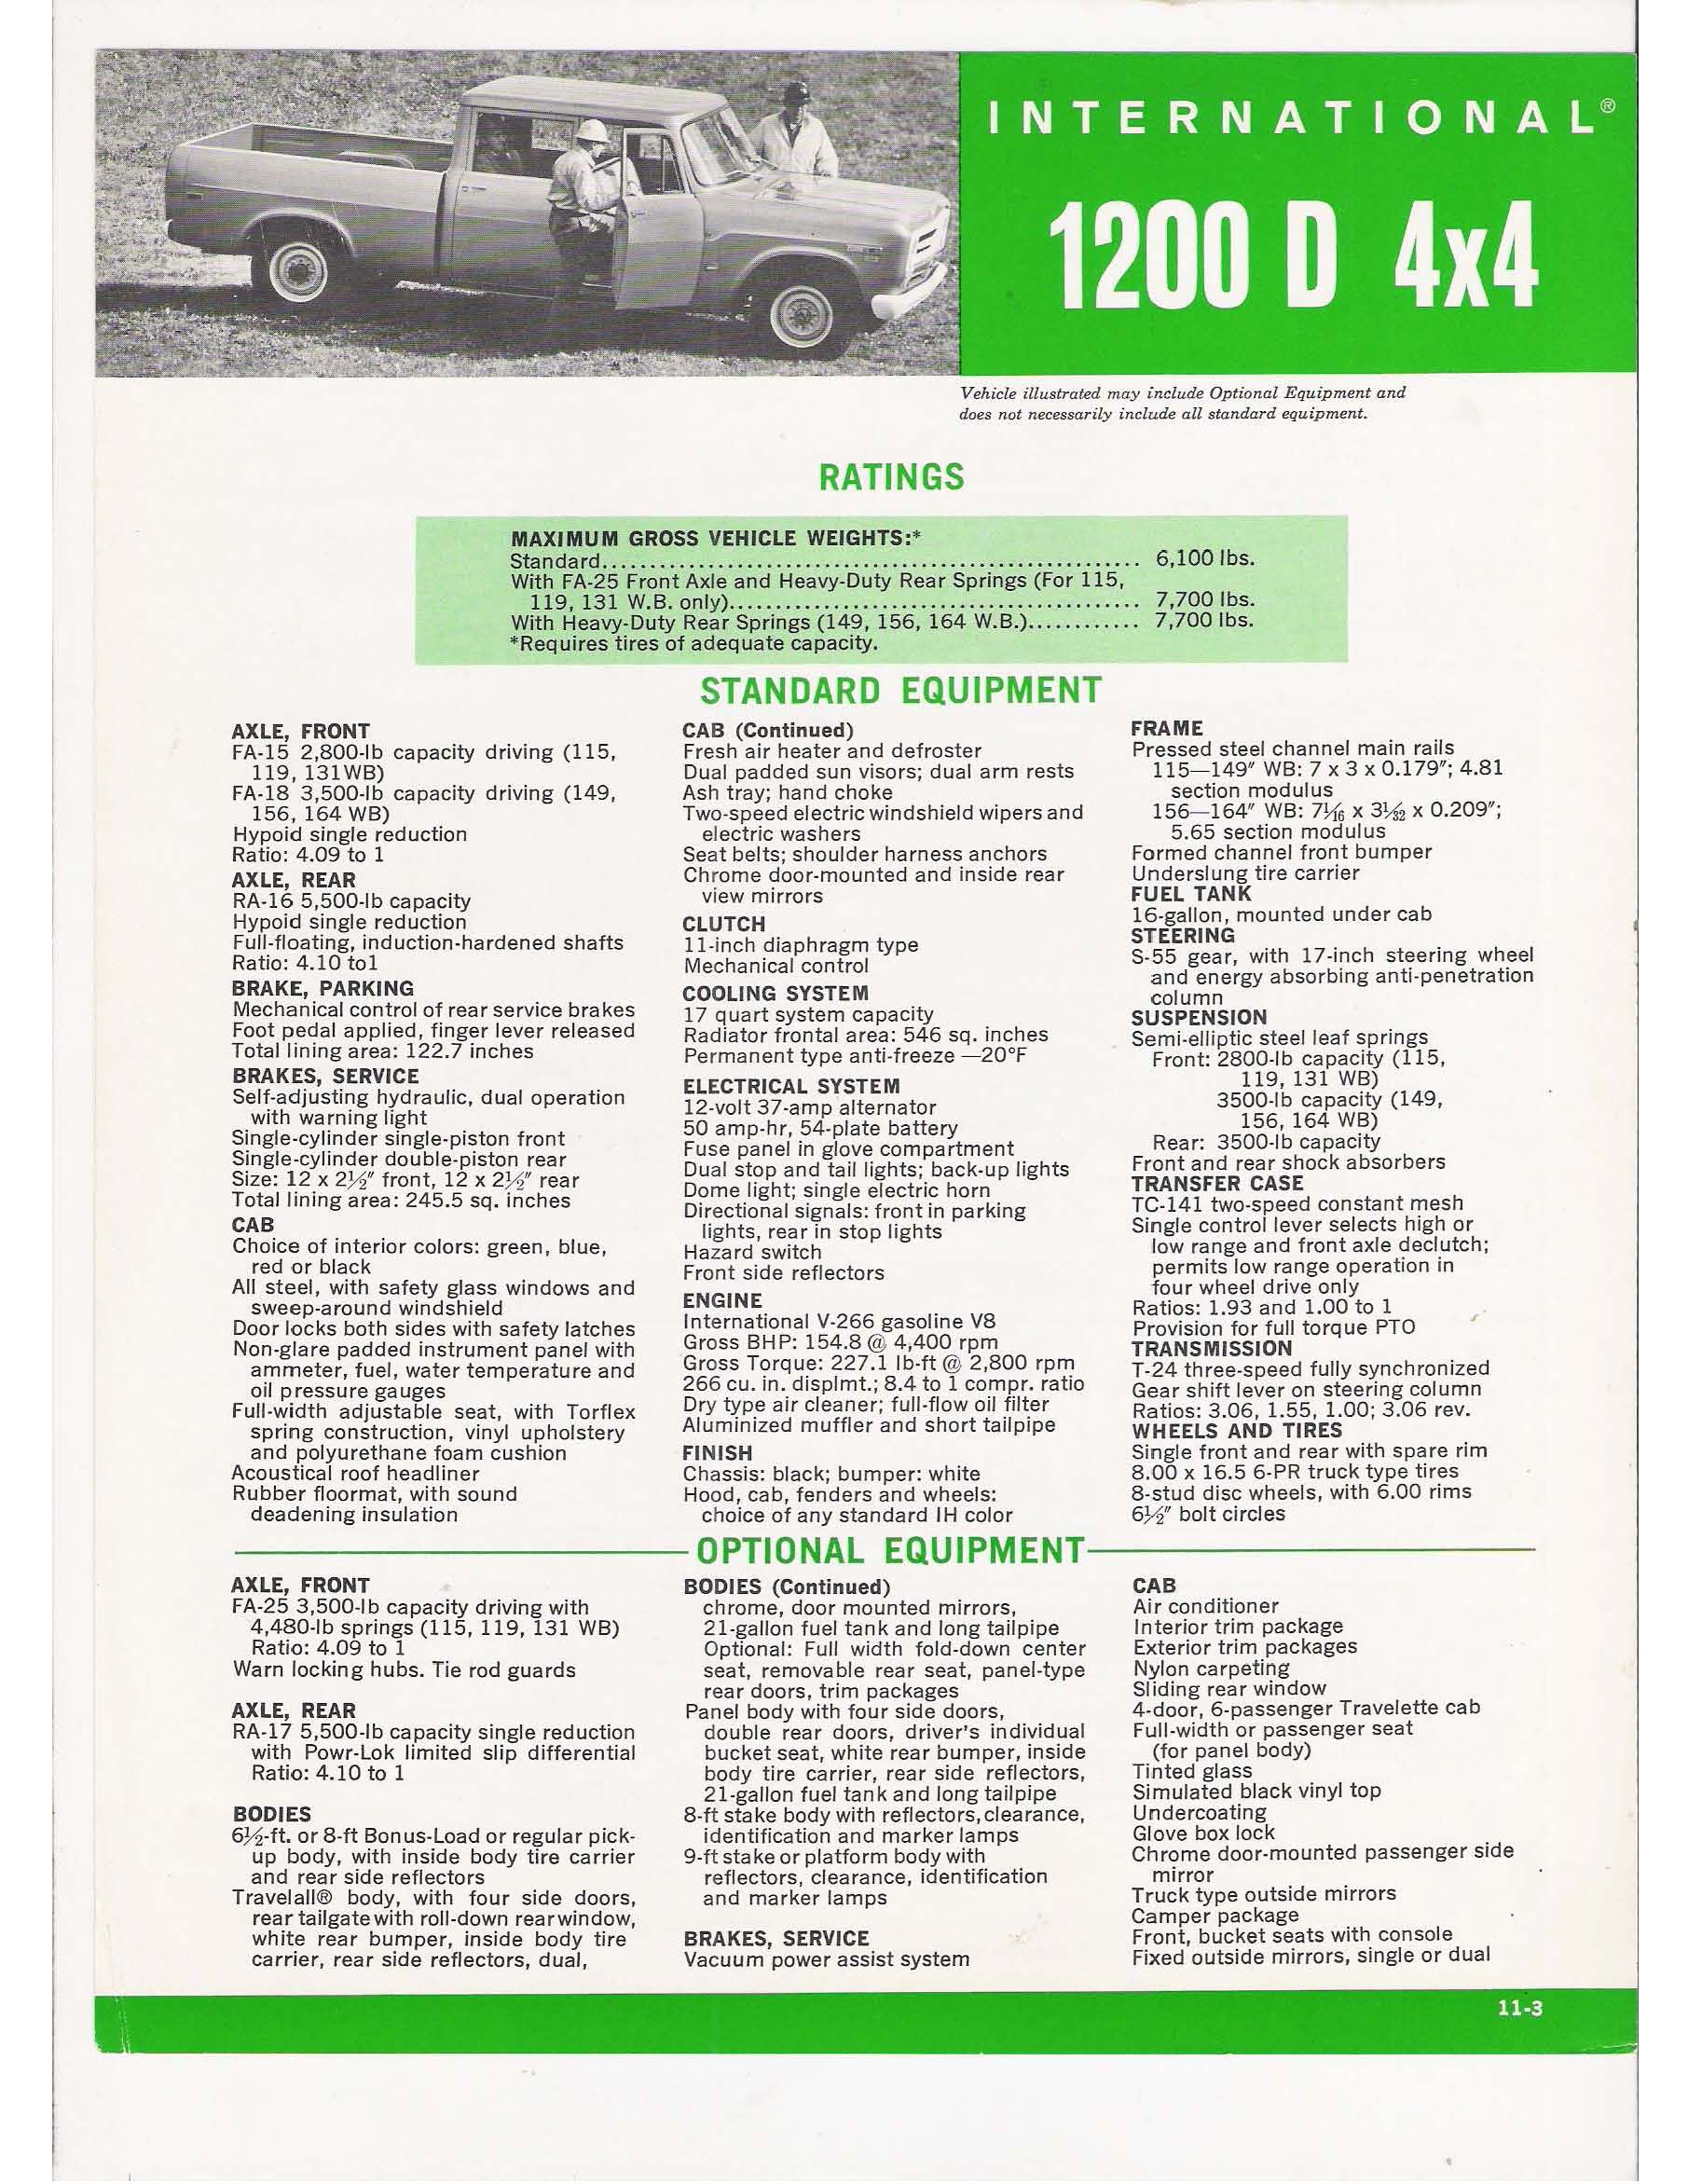 1969 International 1200D 4x4 Folder-01